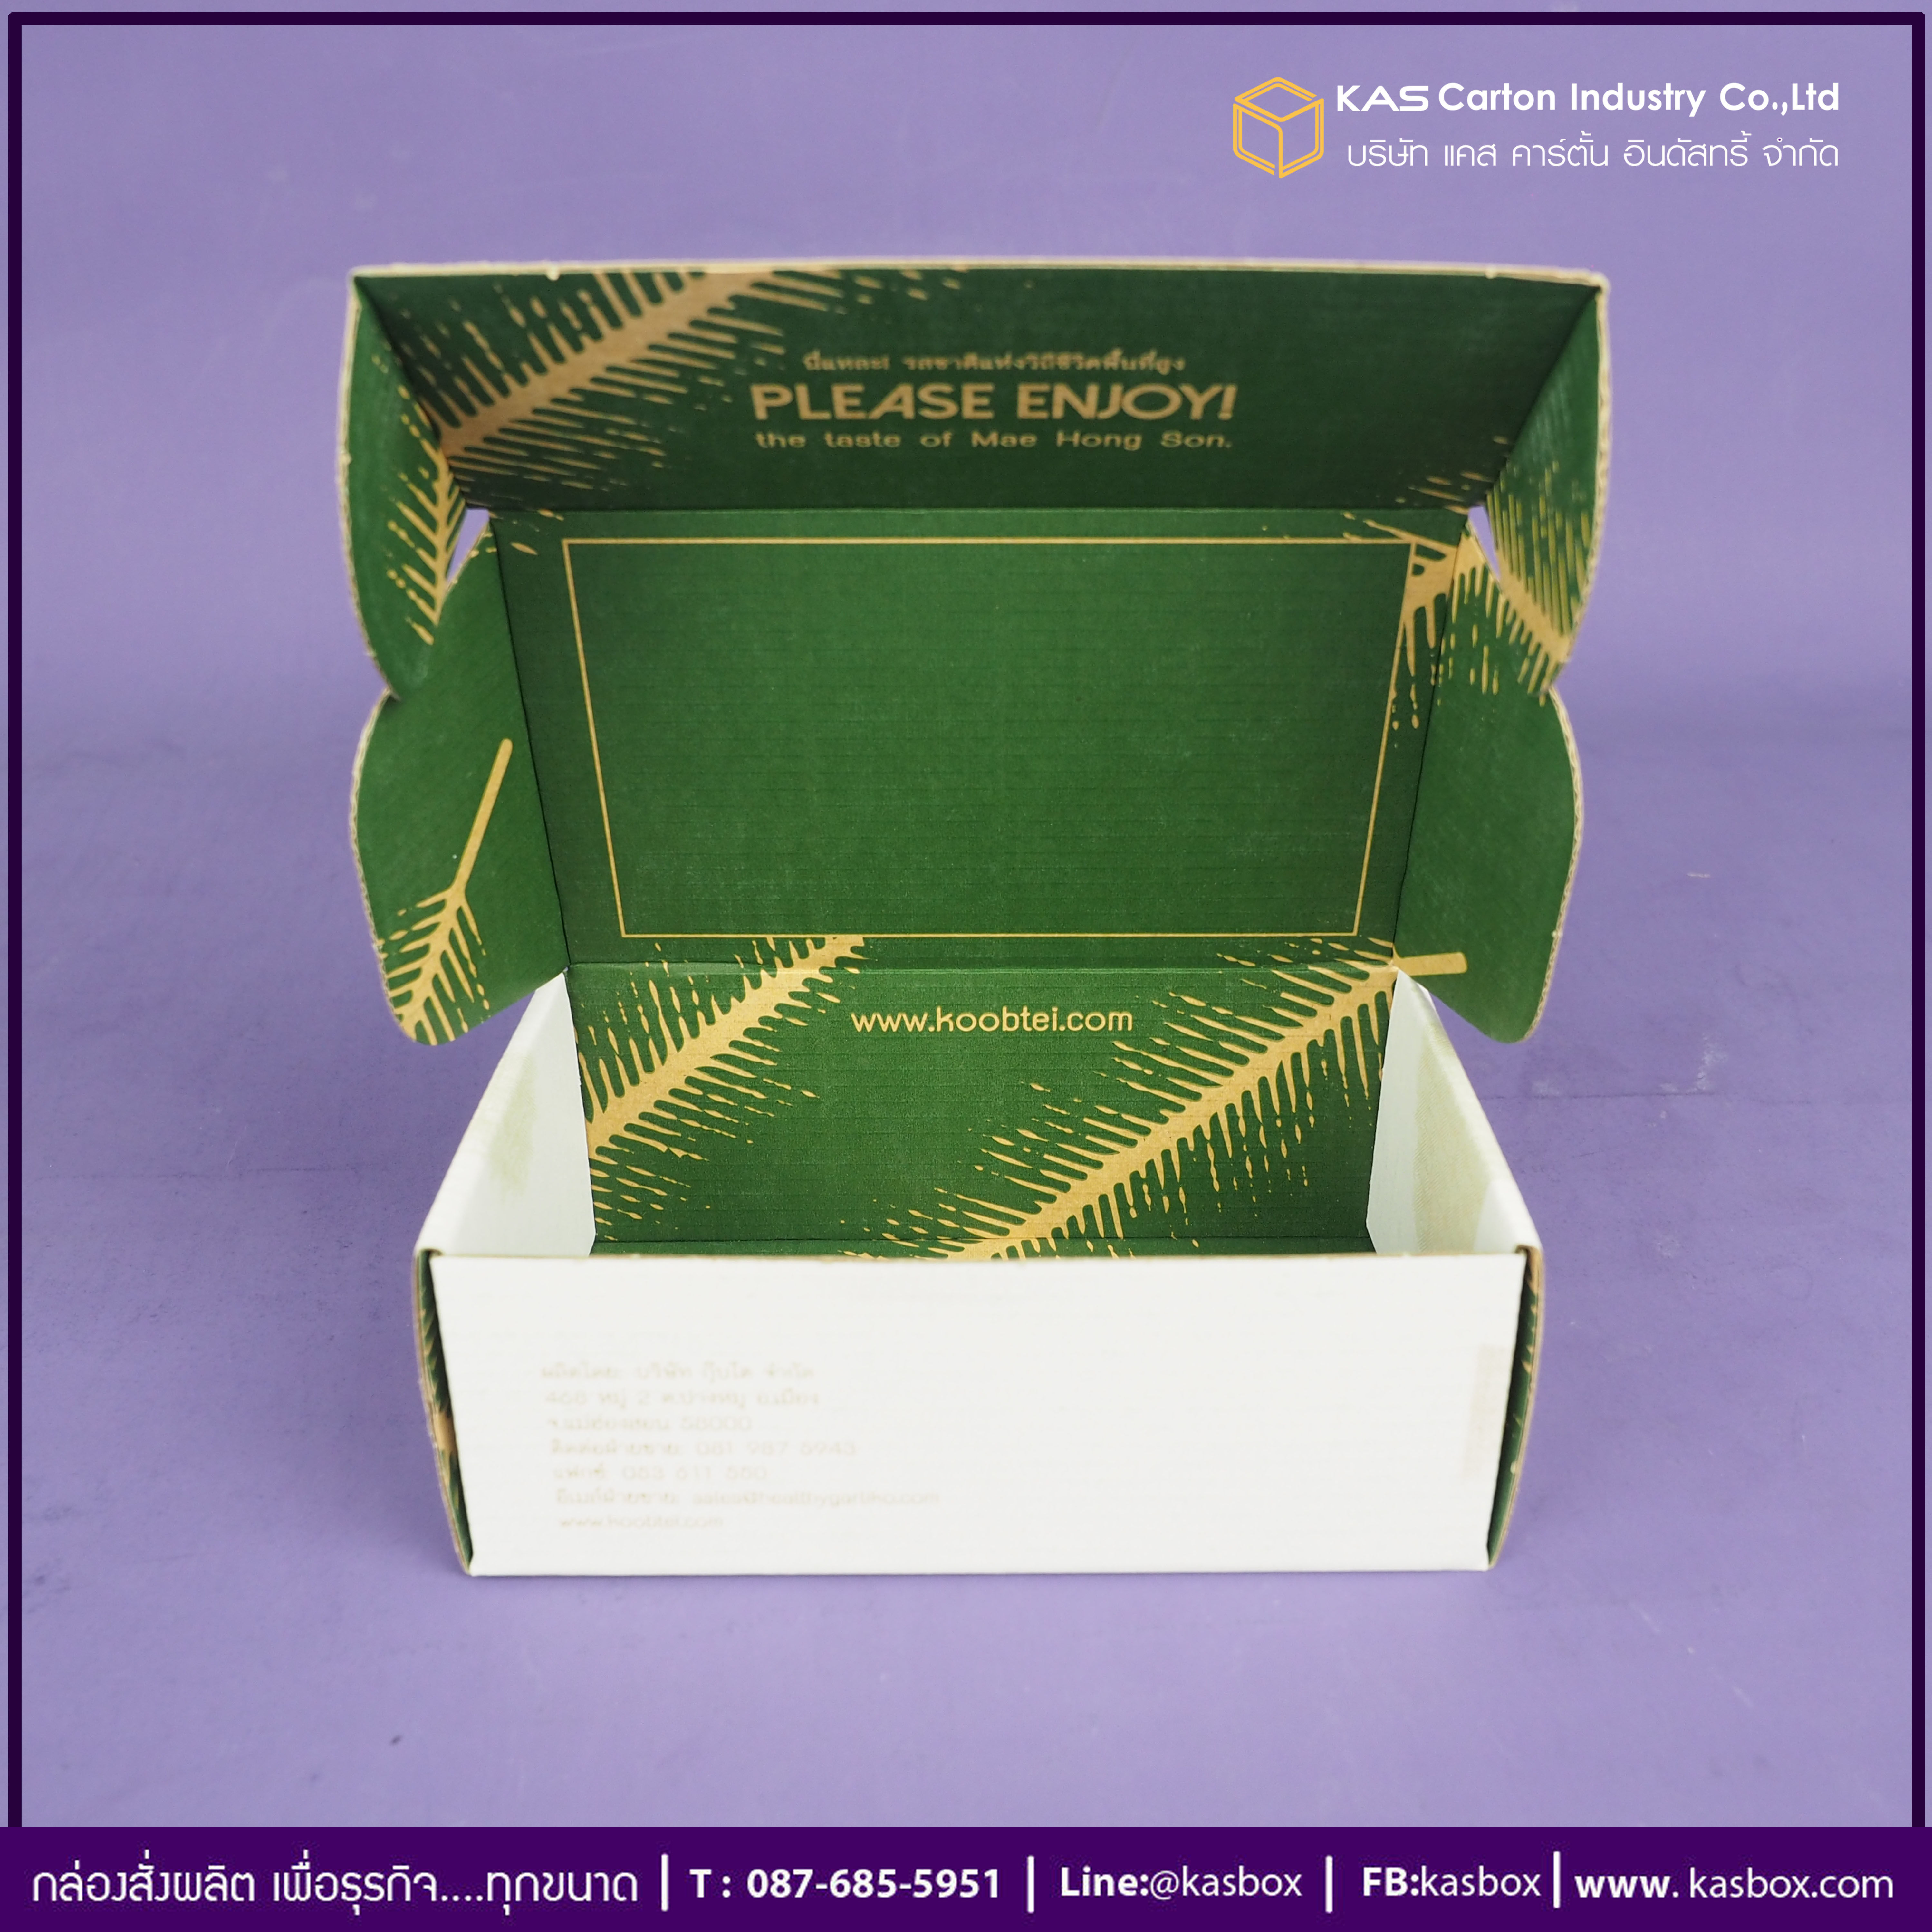 กล่องลูกฟูก สำเร็จรูป และ สั่งผลิต ตามความต้องการลูกค้า กล่องลูกฟูก SME กล่องกระดาษลูกฟูก ใส่ขนมประจำจังหวัด ขนมไต